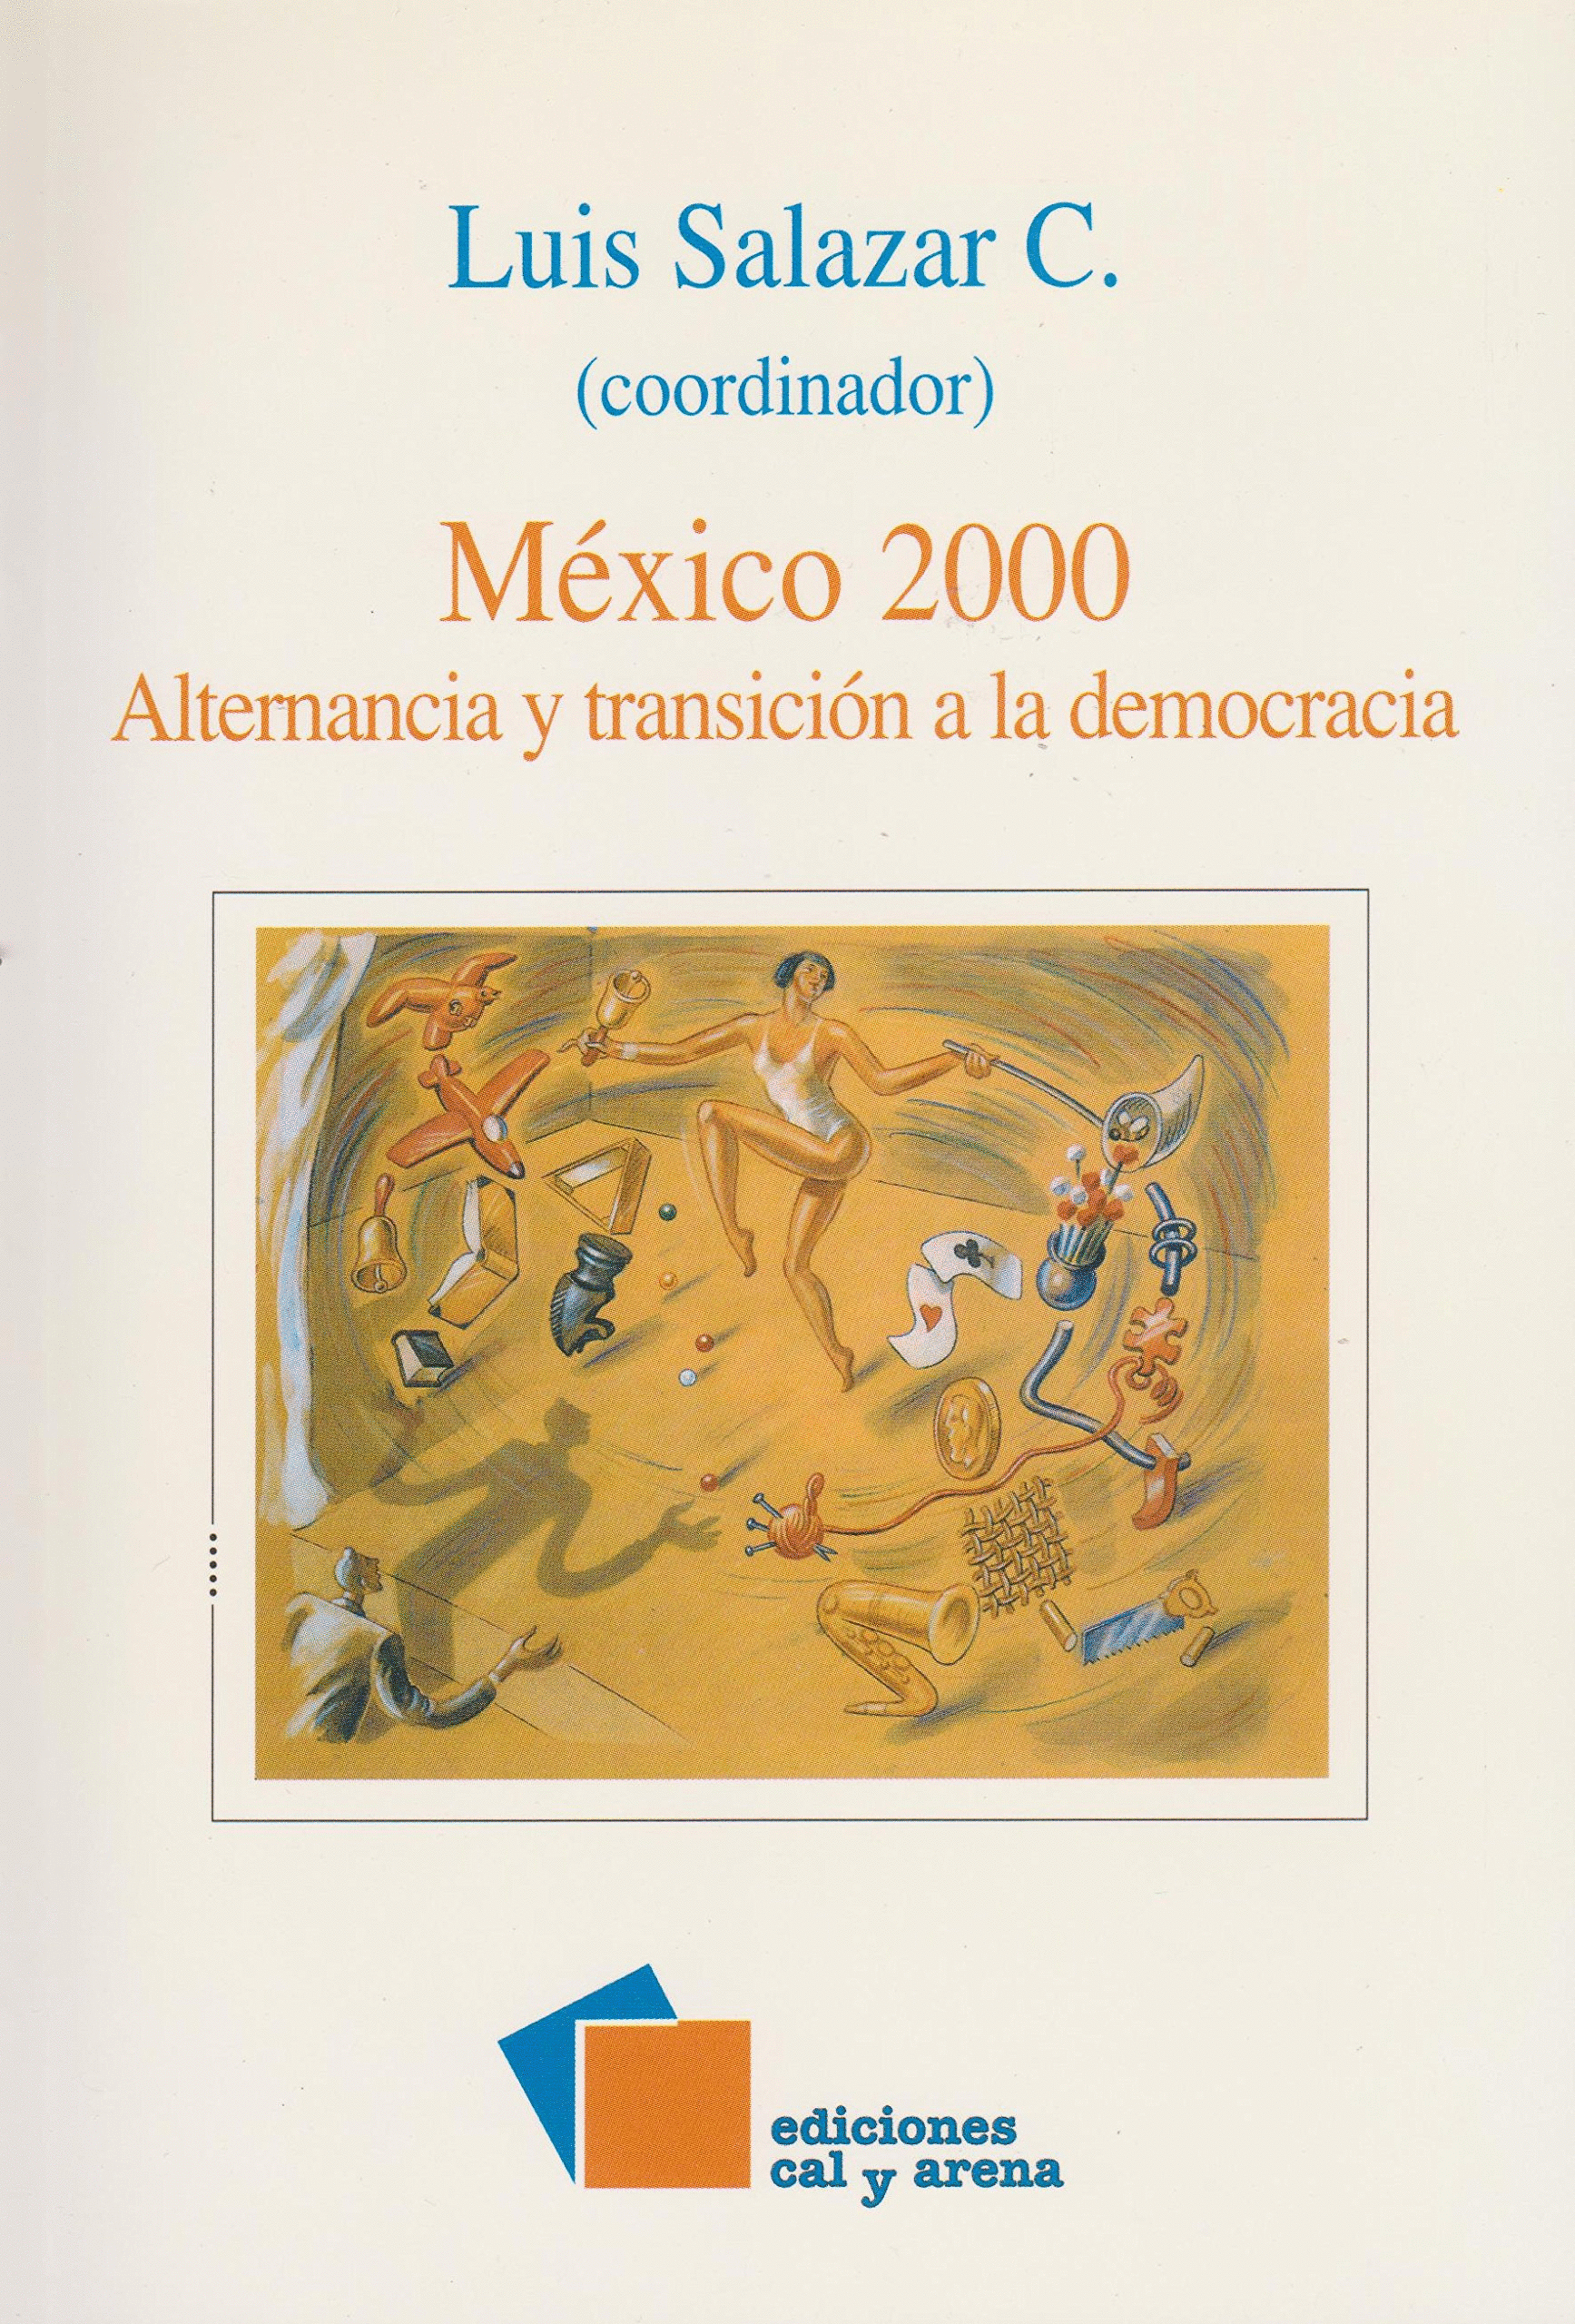 MEXICO 2000 ALTERNANCIA Y TRANSICION A LA DEMOCRACIA